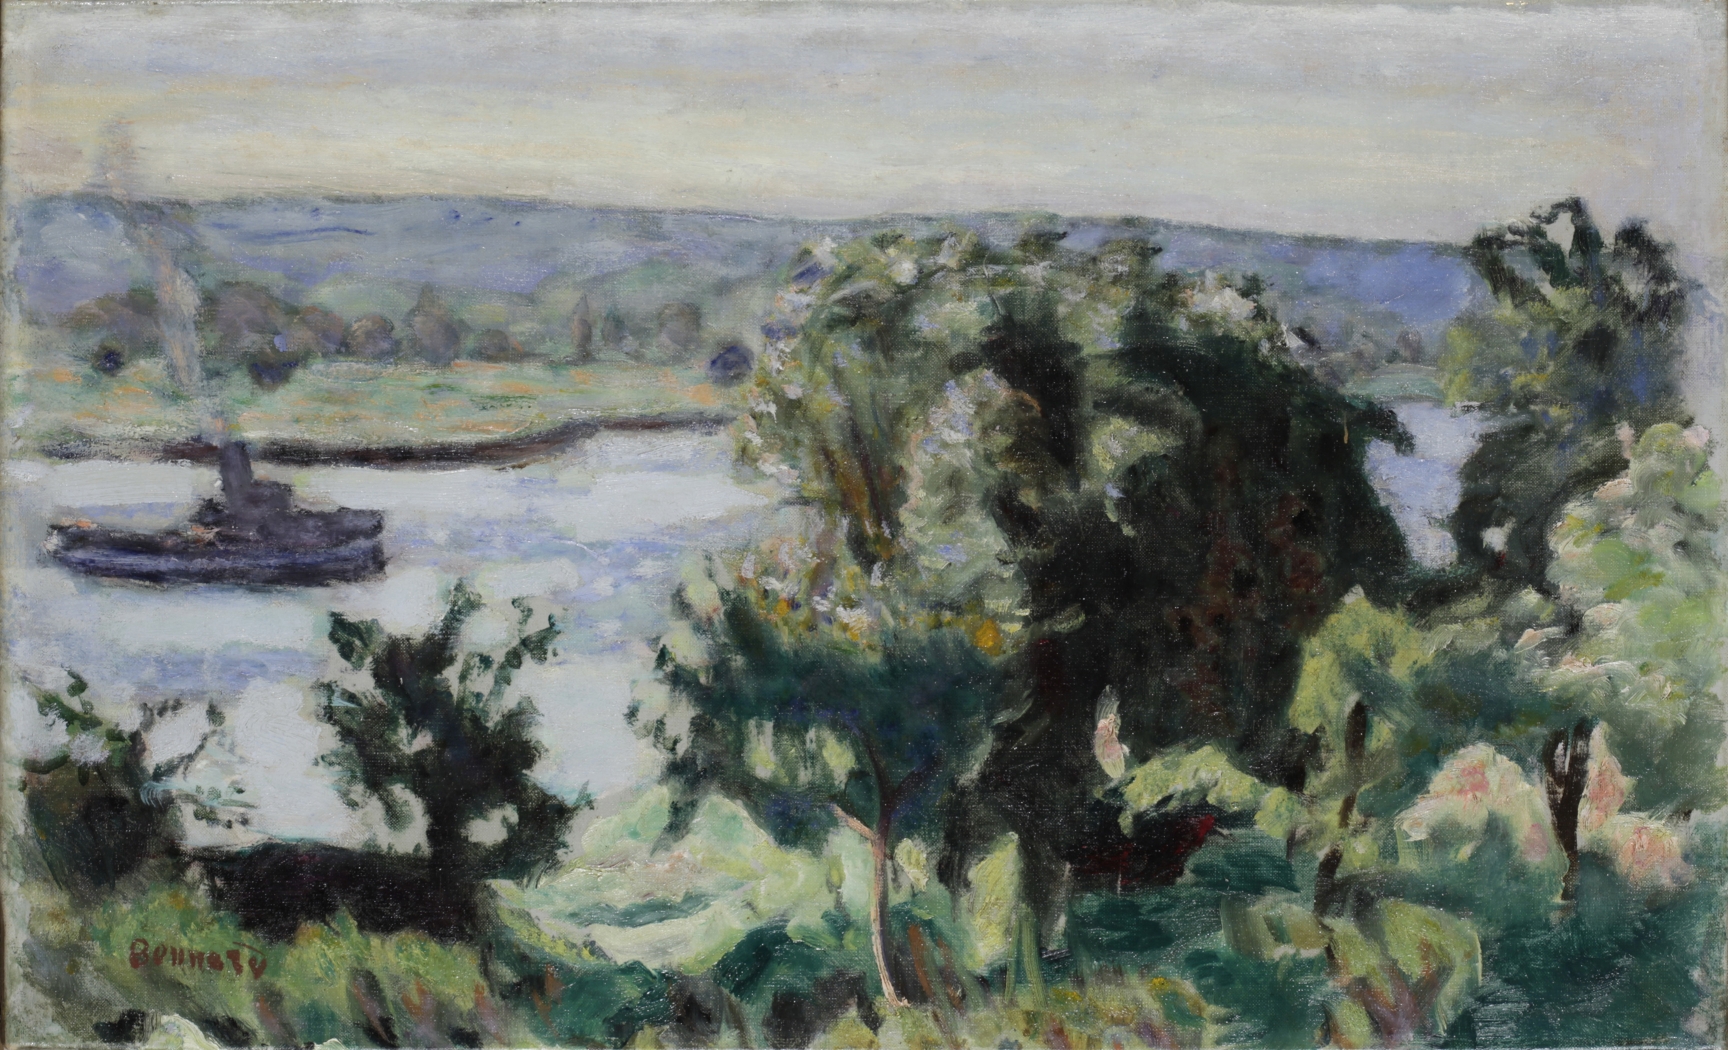 Pierre Bonnard, La Seine à Vernon, 1912, Mie Prefectural Art Museum